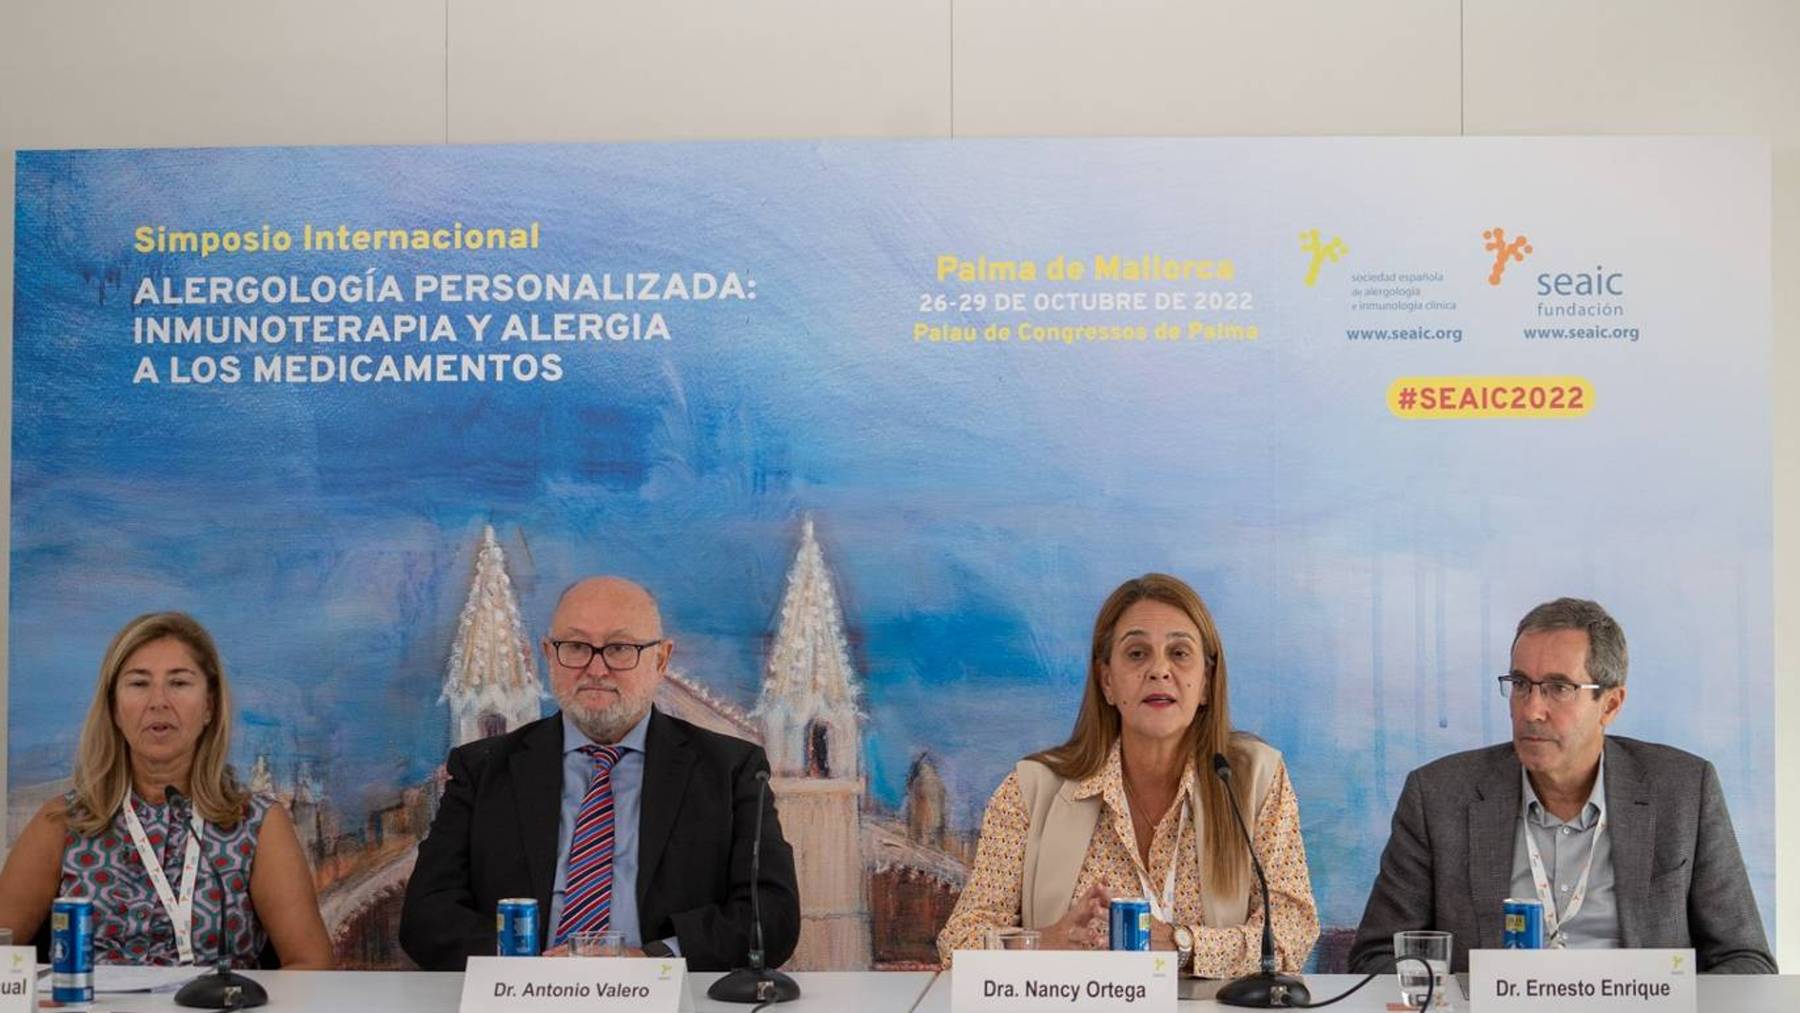 Simposio Internacional de Alergología celebrado en Palma.